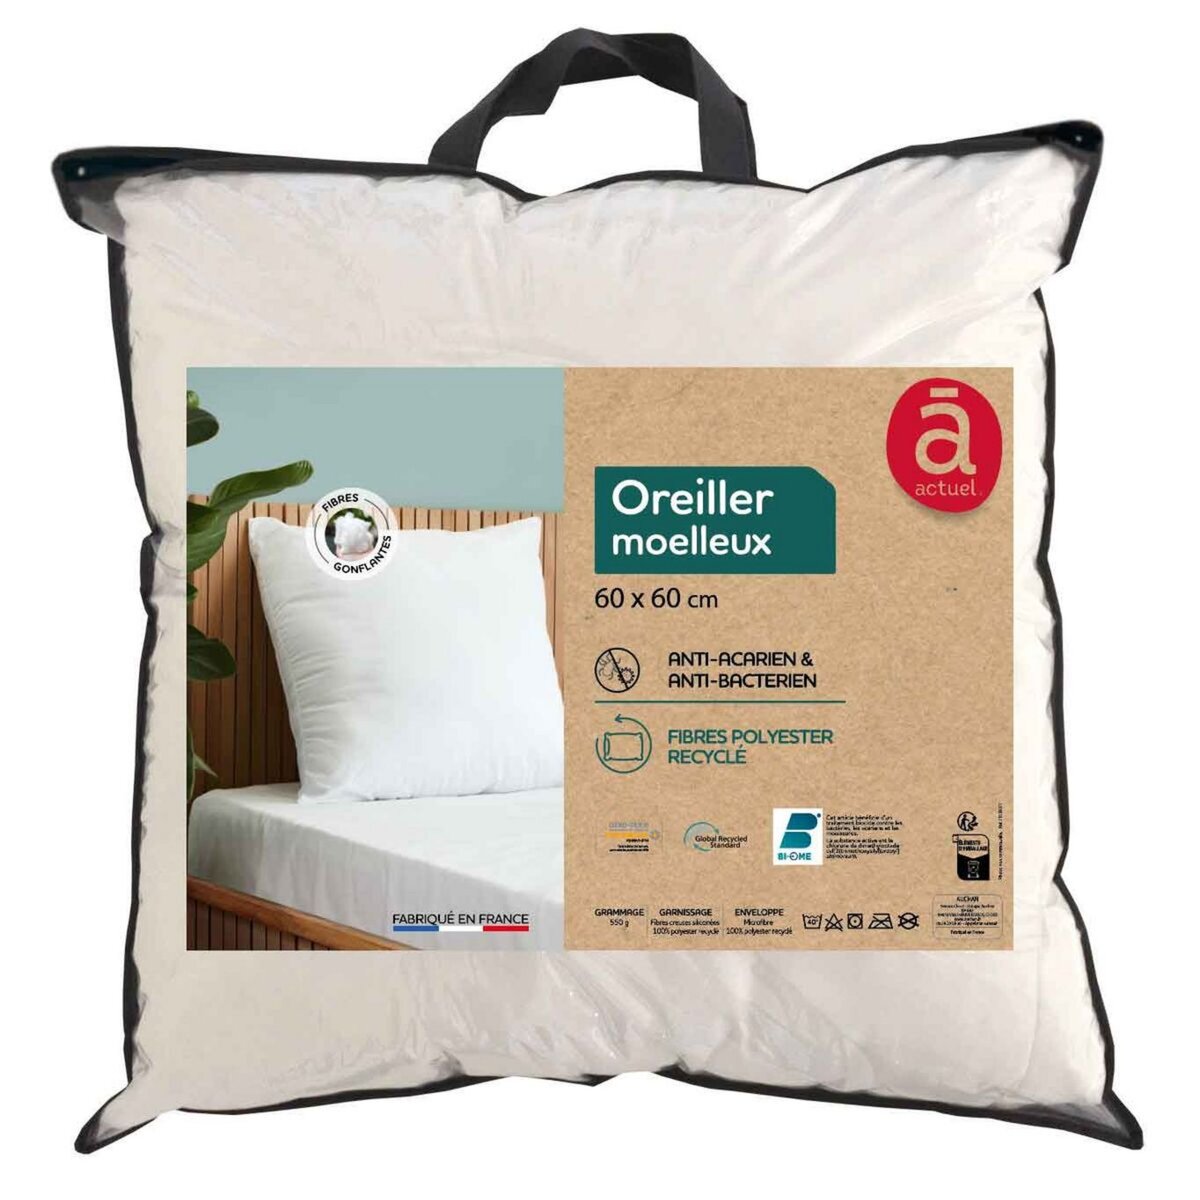 ACTUEL Oreiller confort moelleux en polyester recyclé anti acariens